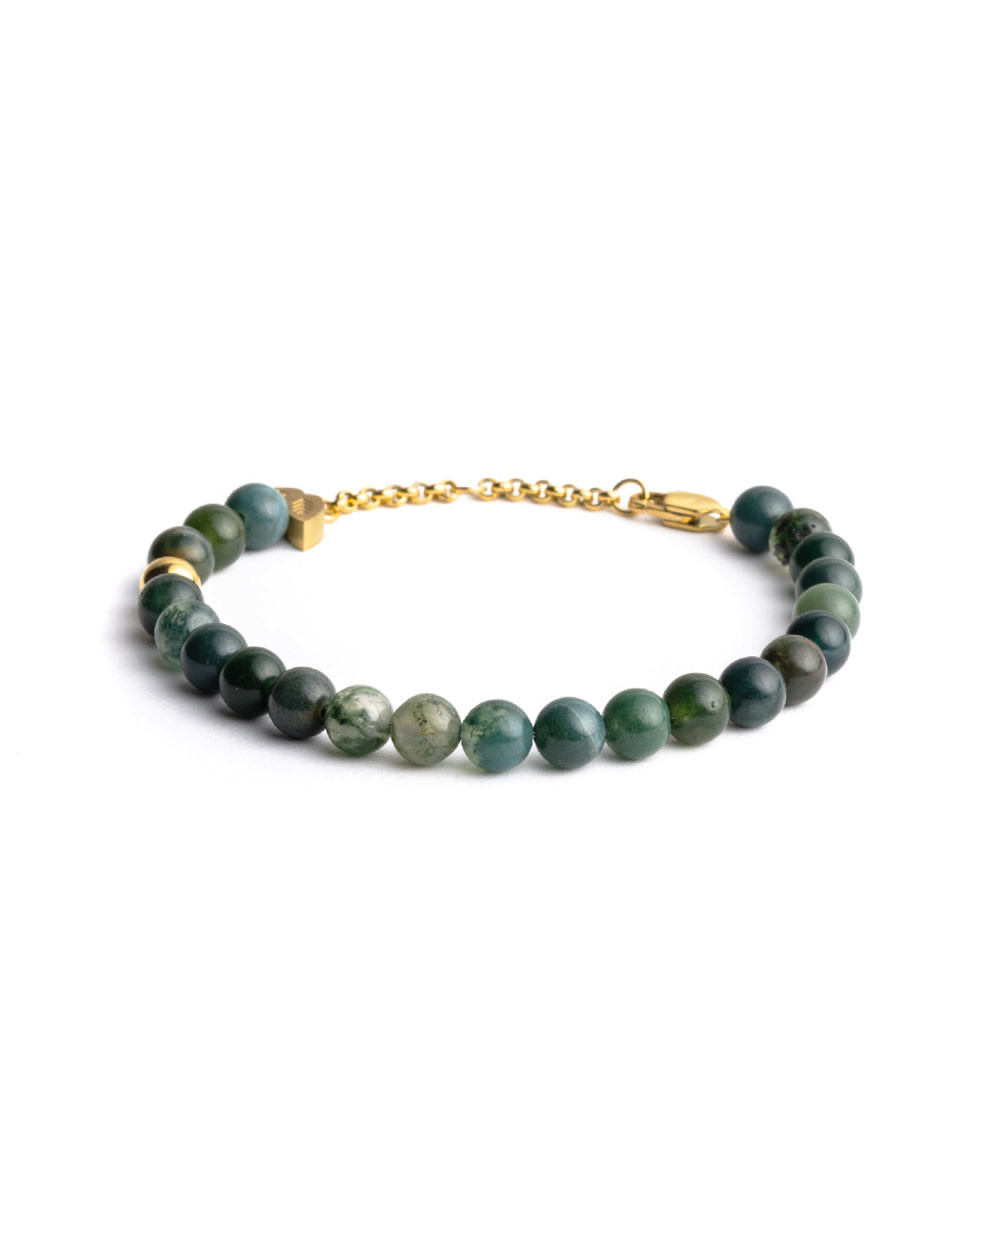 didyma-green-malia-bracelet